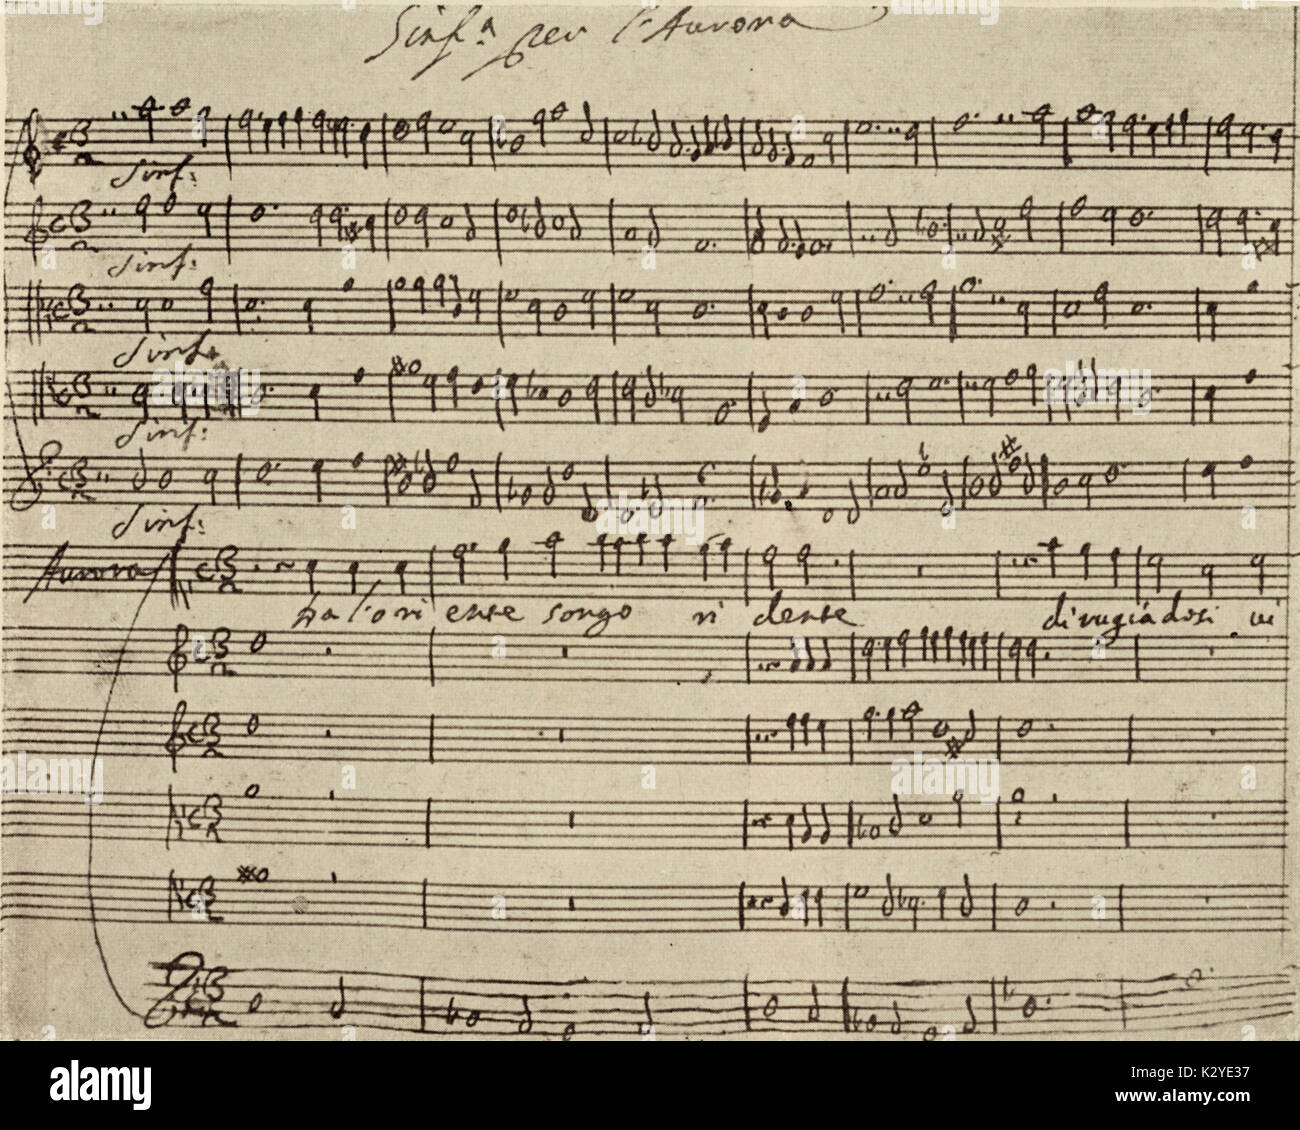 CAVALLI, Francesco - note manuscrite pour prologue de son opéra, L'Egisto, 1642. (Favola drammatica) compositeur vénitien et organiste, 1602-1676. Successeur de Monteverdi. Livret de Giovanni Faustini. Banque D'Images